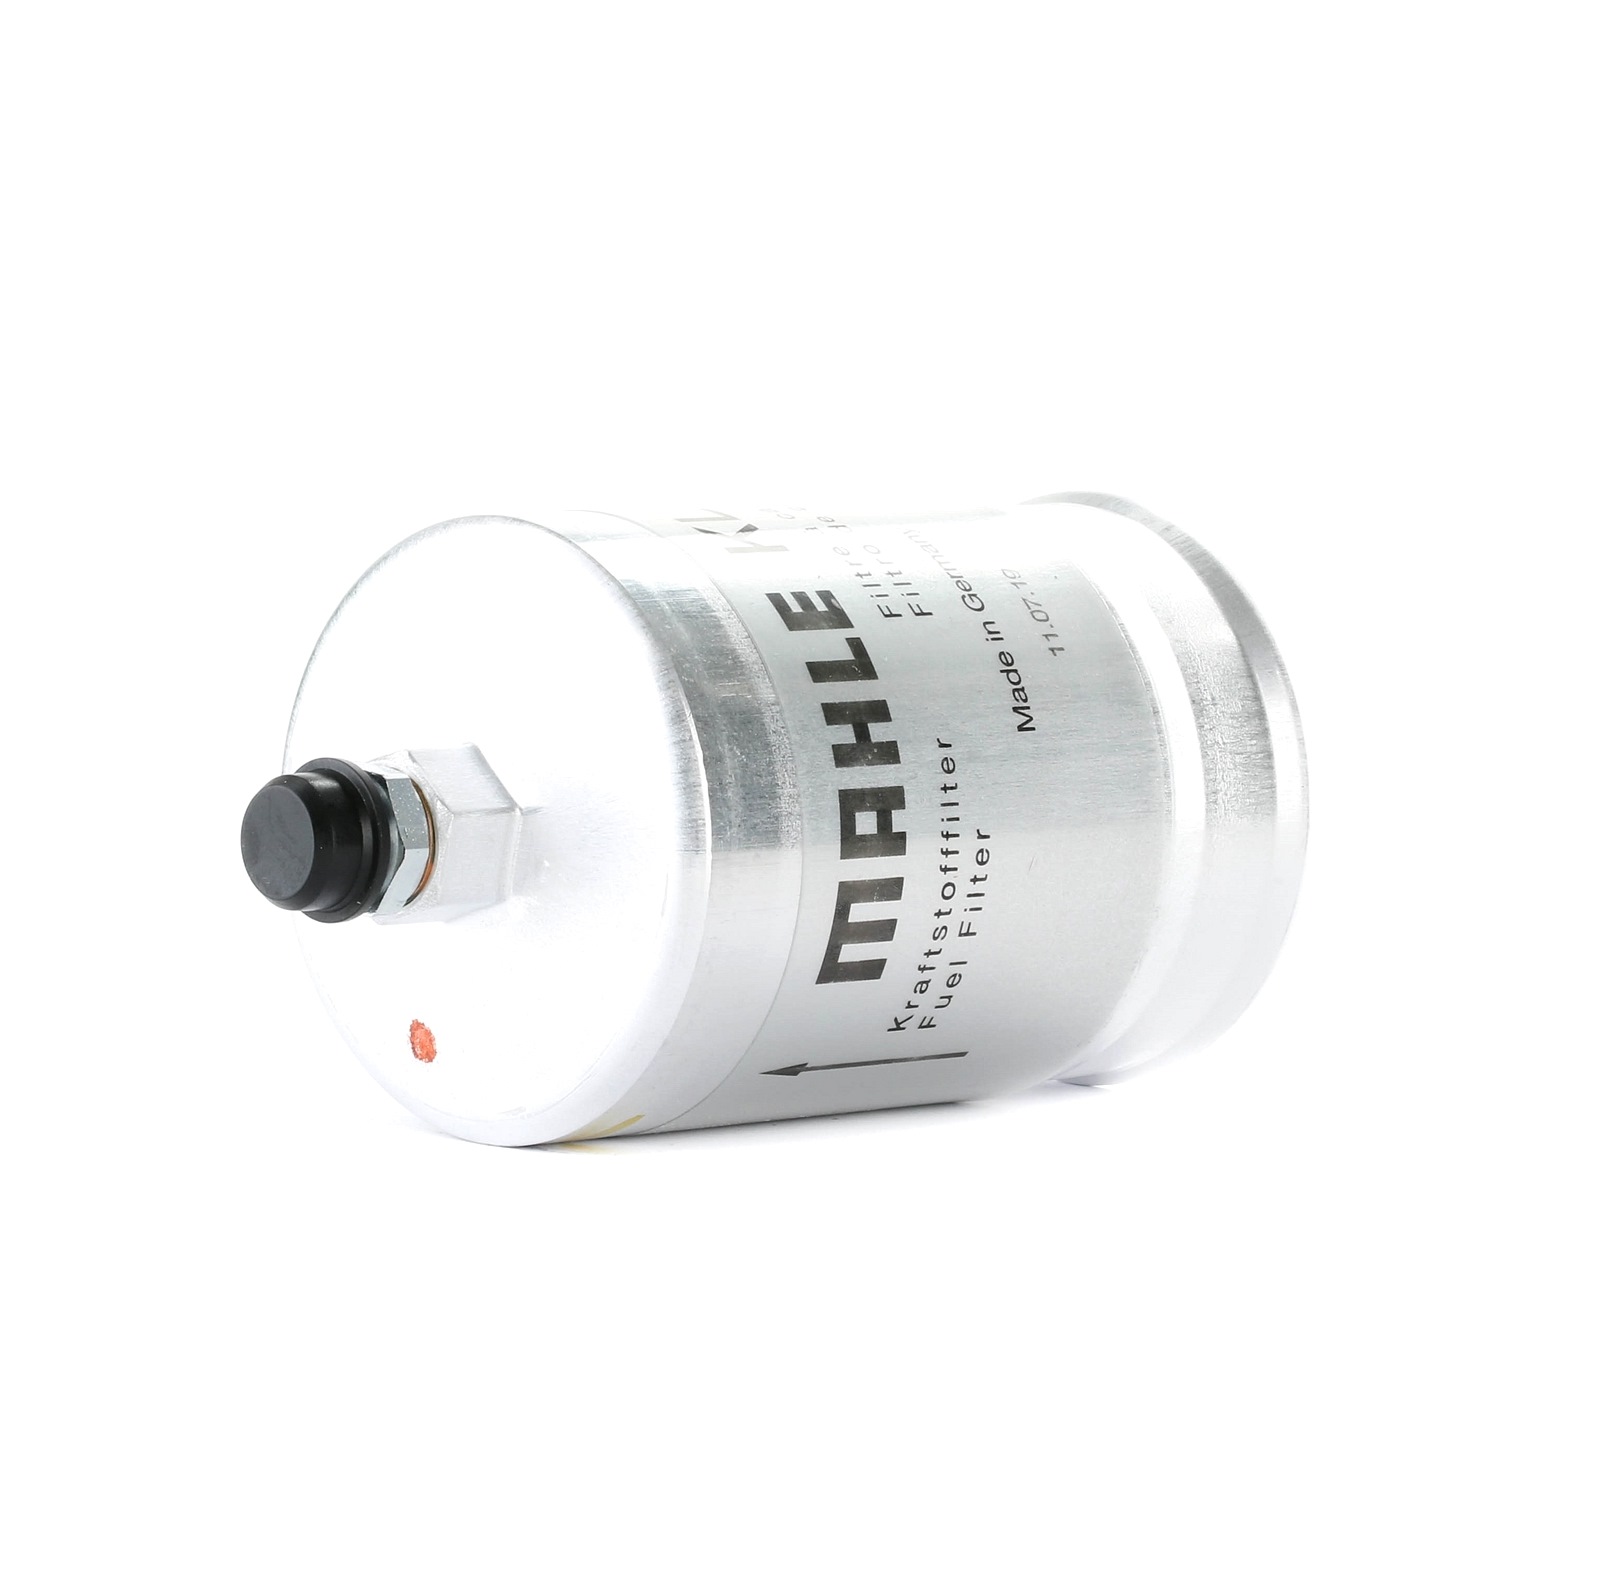 MAHLE ORIGINAL KL 19 Fuel filter In-Line Filter